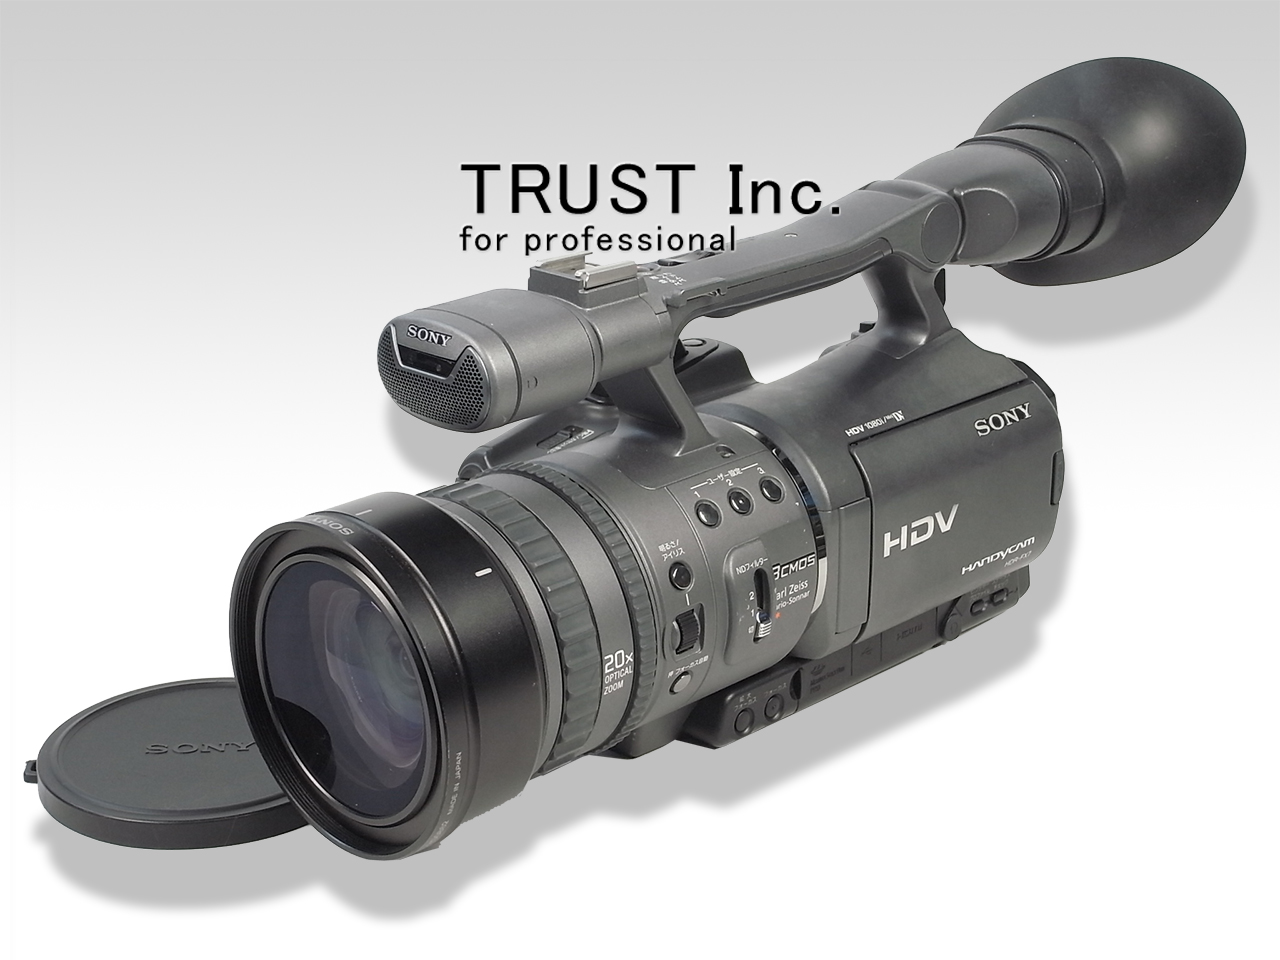 SONYデジタルハイビジョンカメラレコーダーHDR-FX7